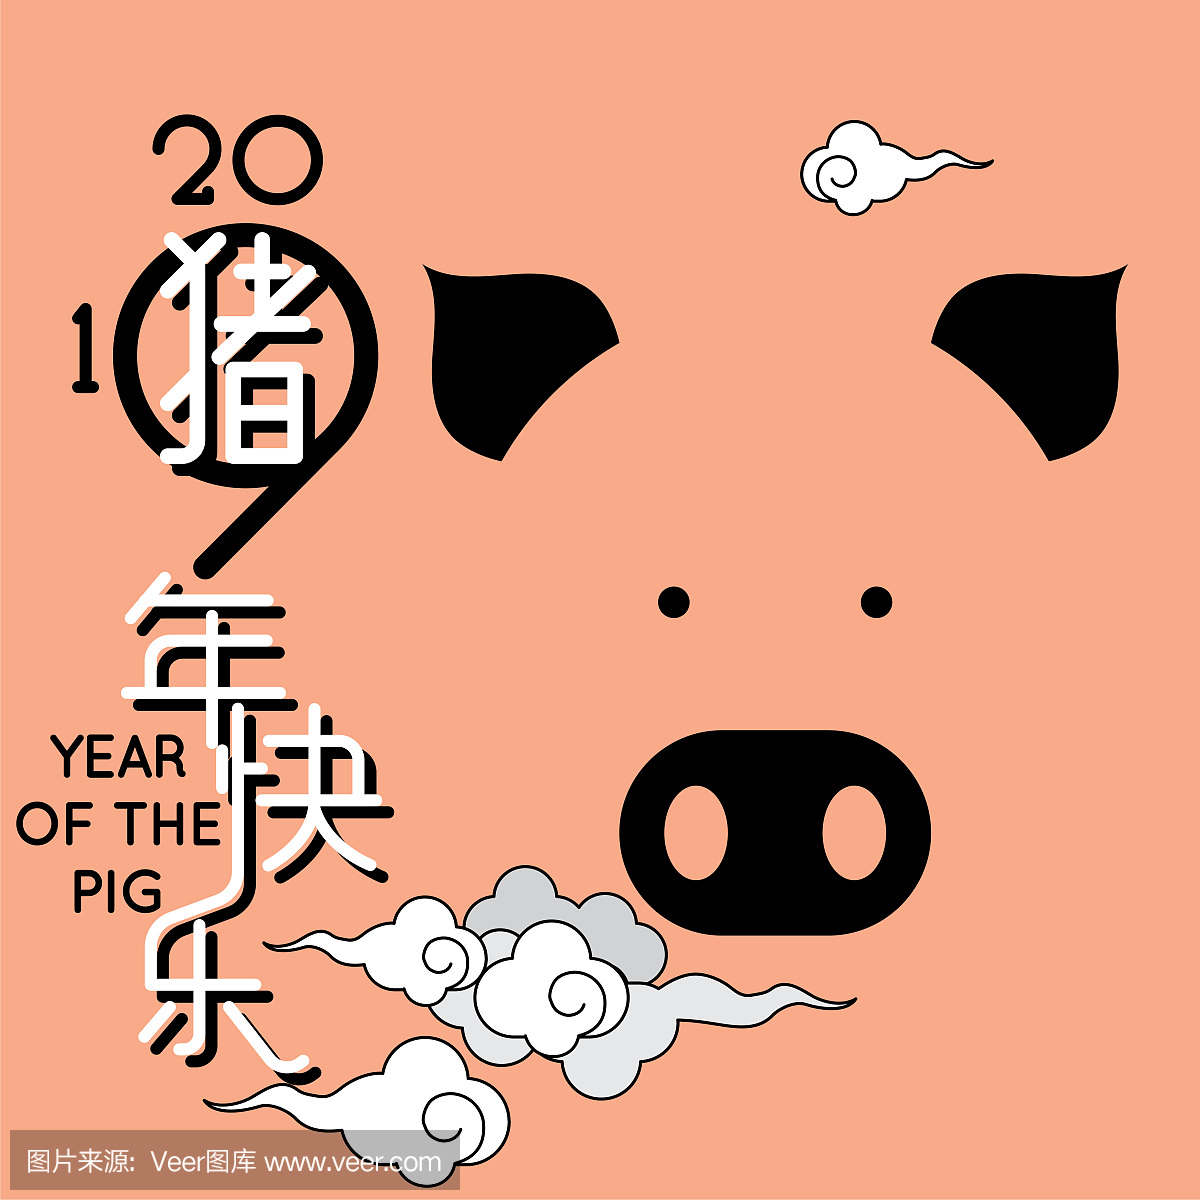 中国农历新年快乐2019年,可爱的卡通猪猪年。